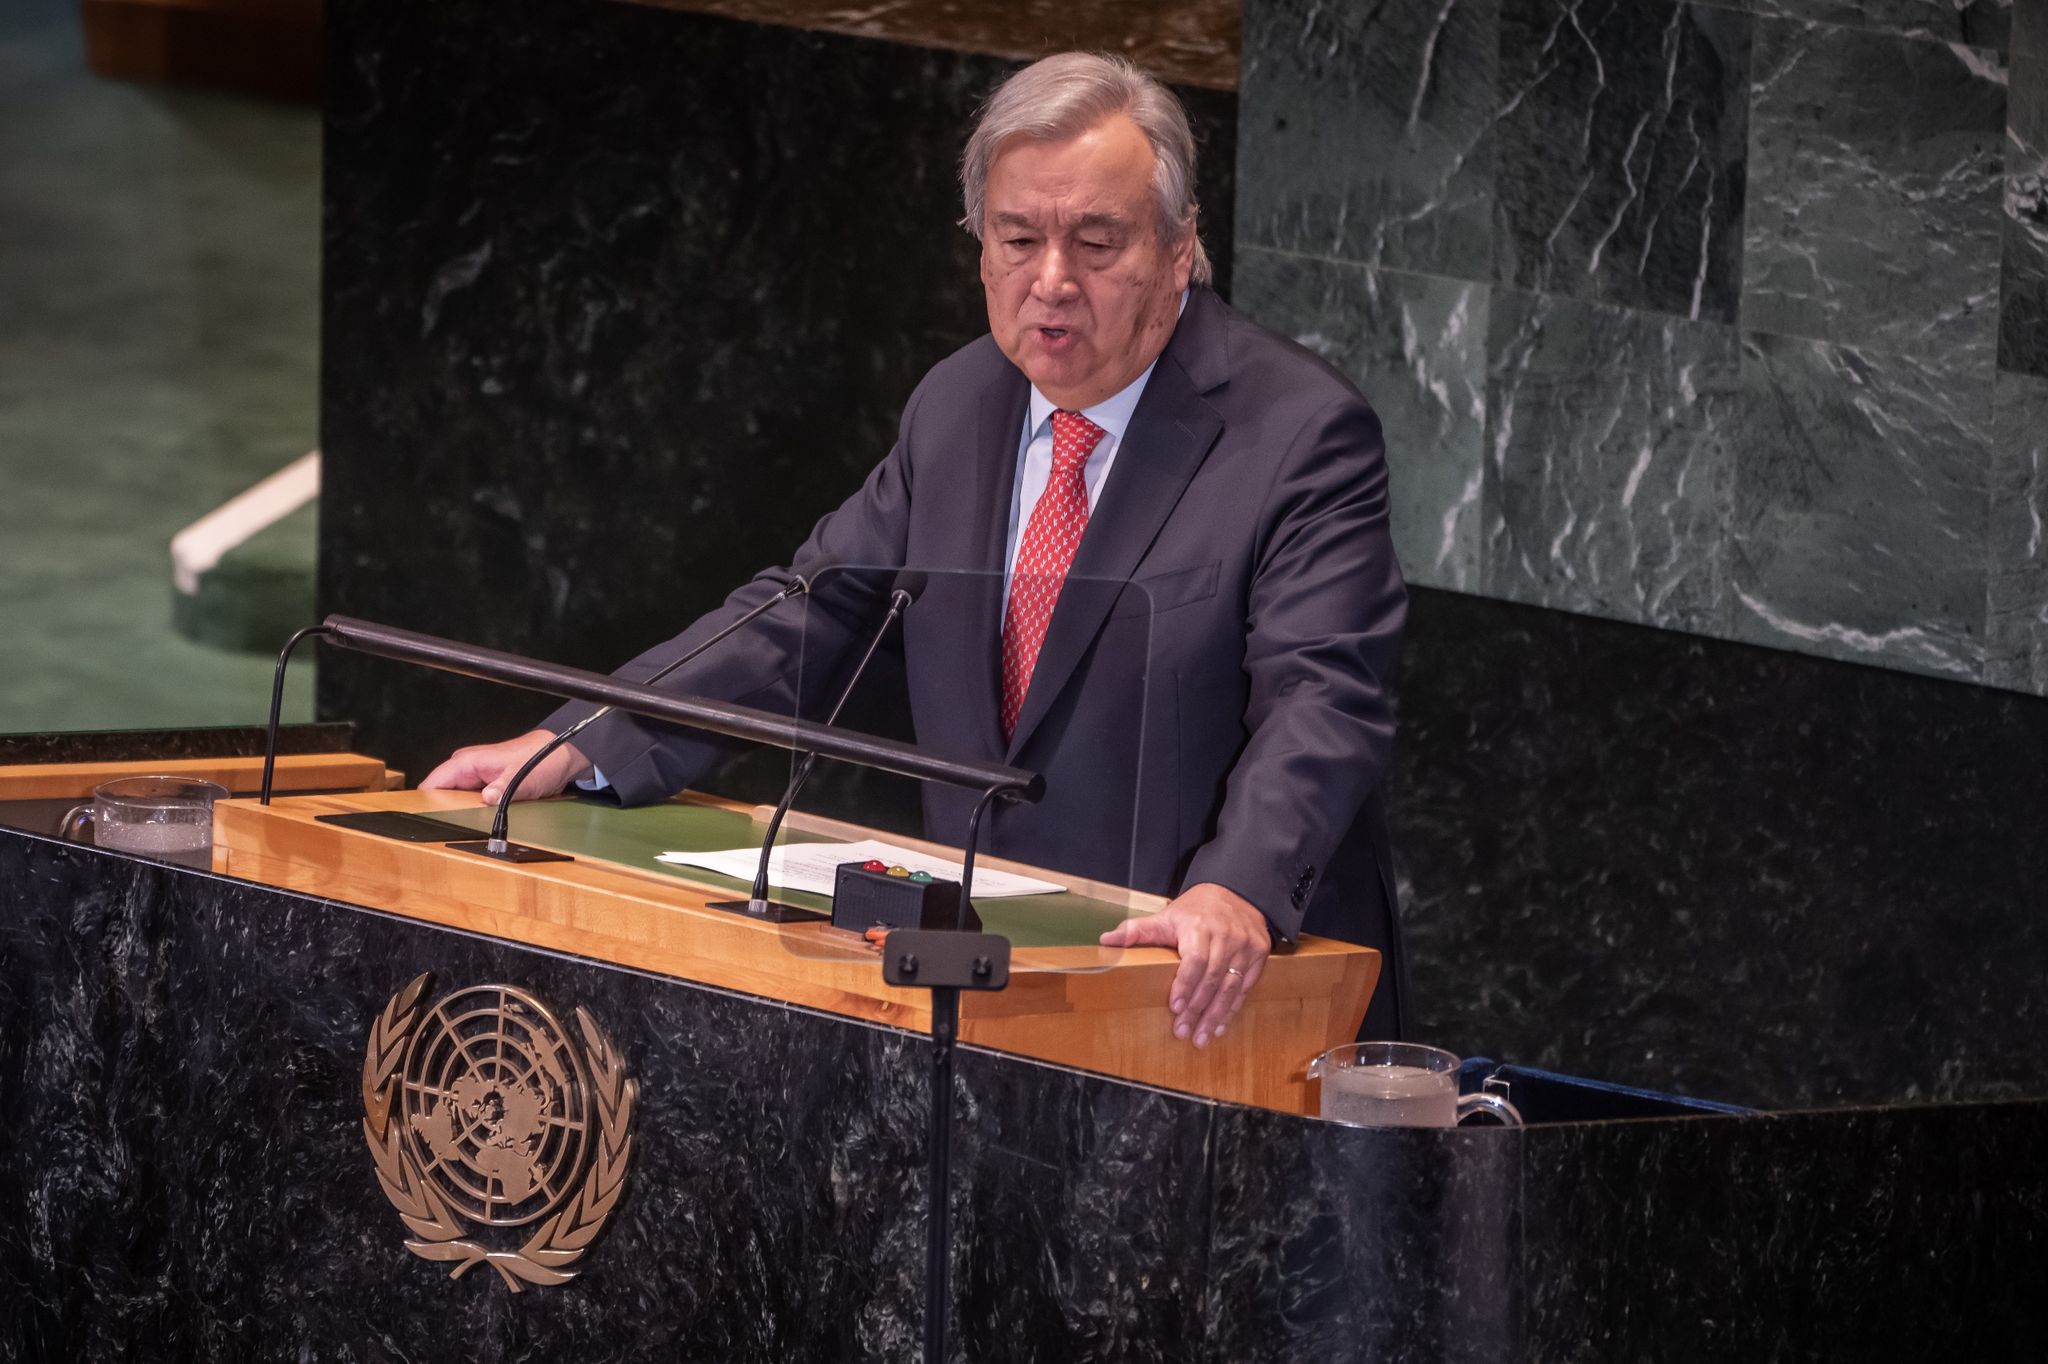 António Guterres spricht bei der Konferenz über Stand der Nachhaltigkeitsziele der Vereinten Nationen. (© Michael Kappeler/dpa)